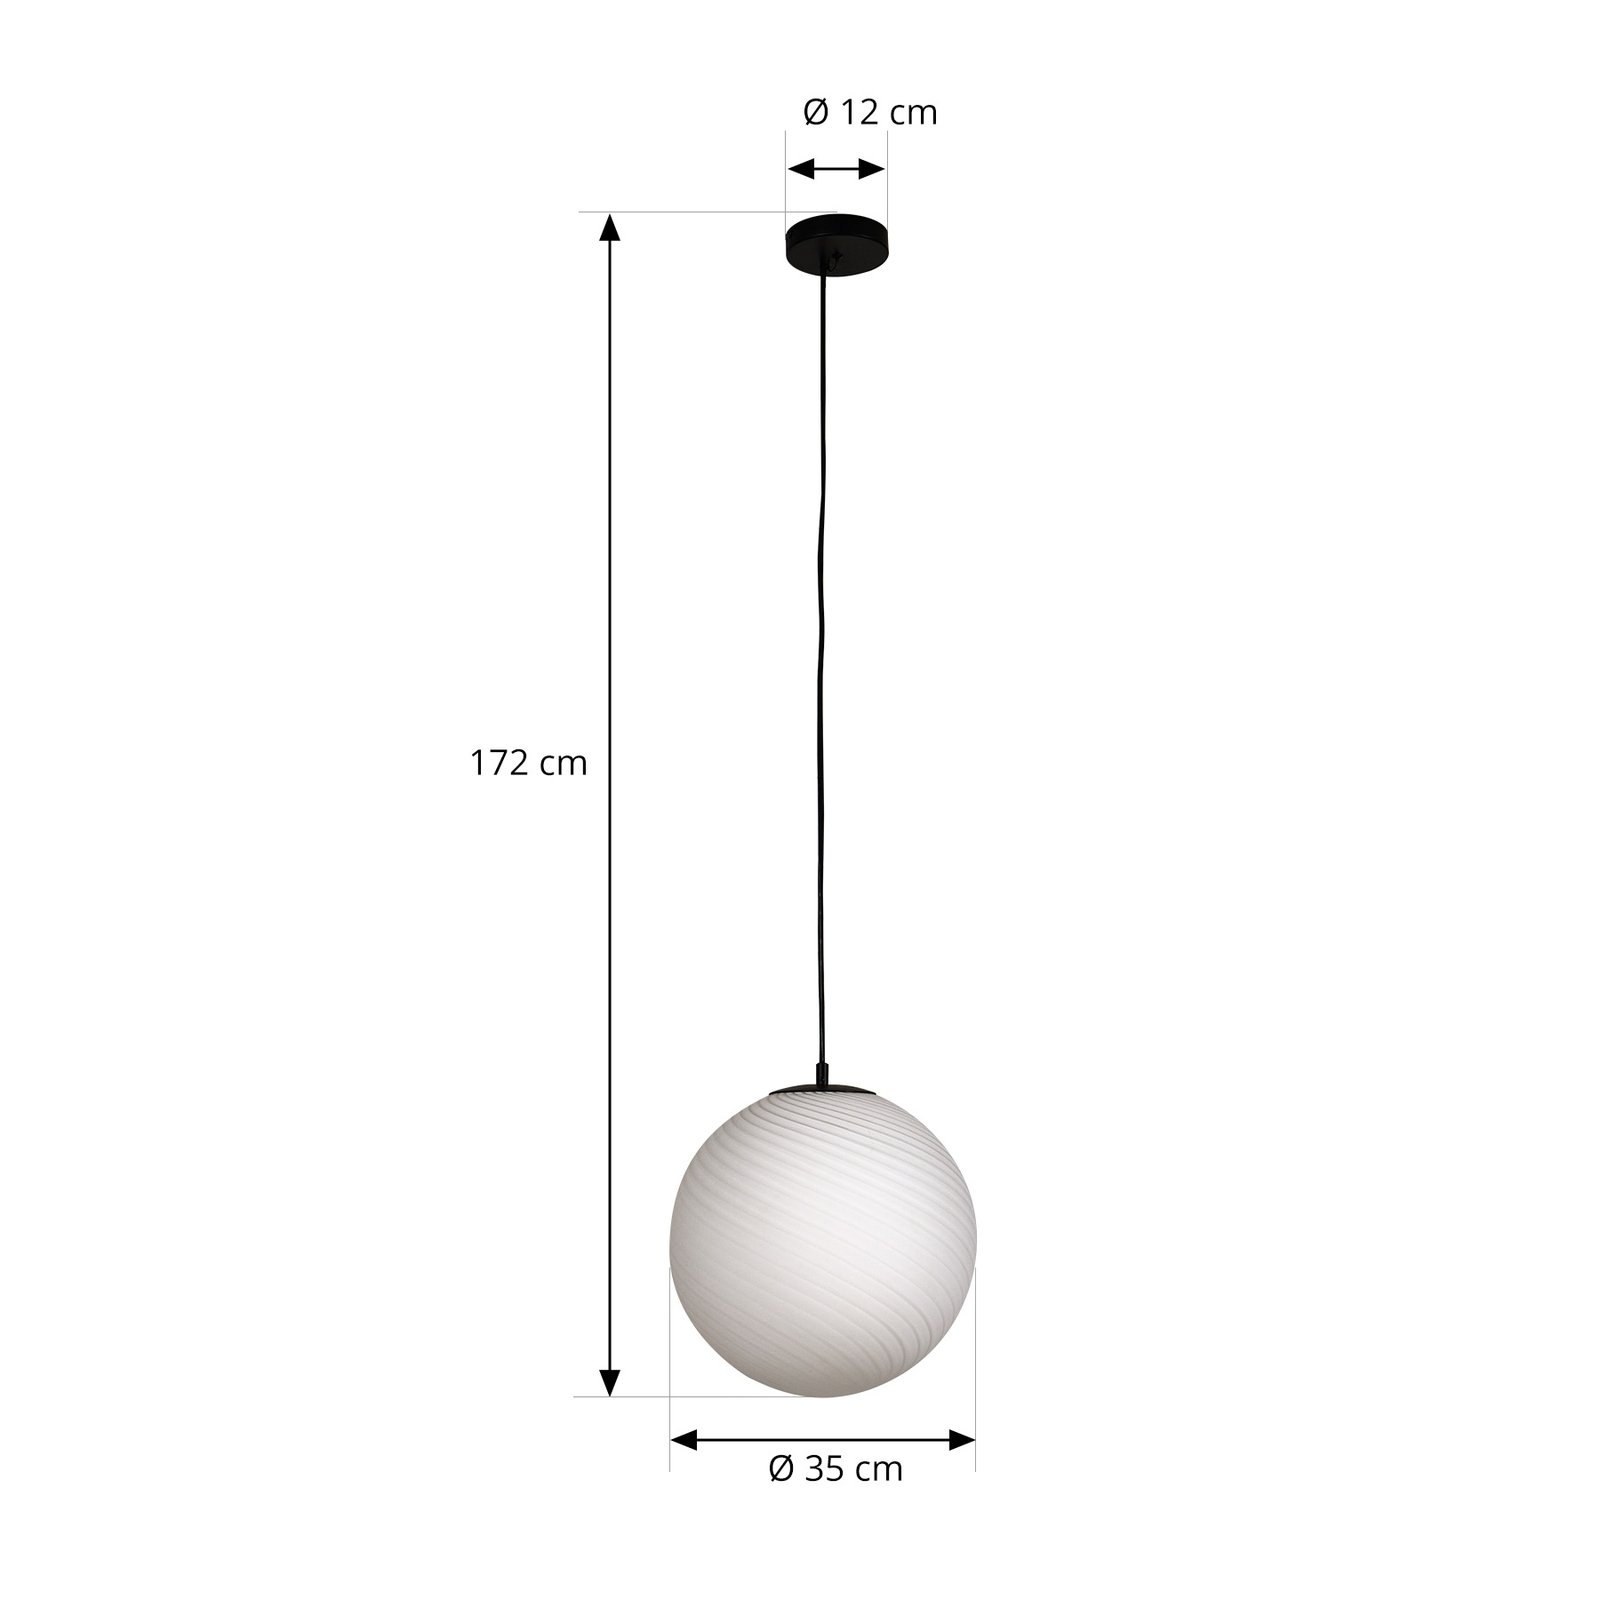 Lucande pendant light Kestralia, white, glass, Ø 36.8 cm, E27